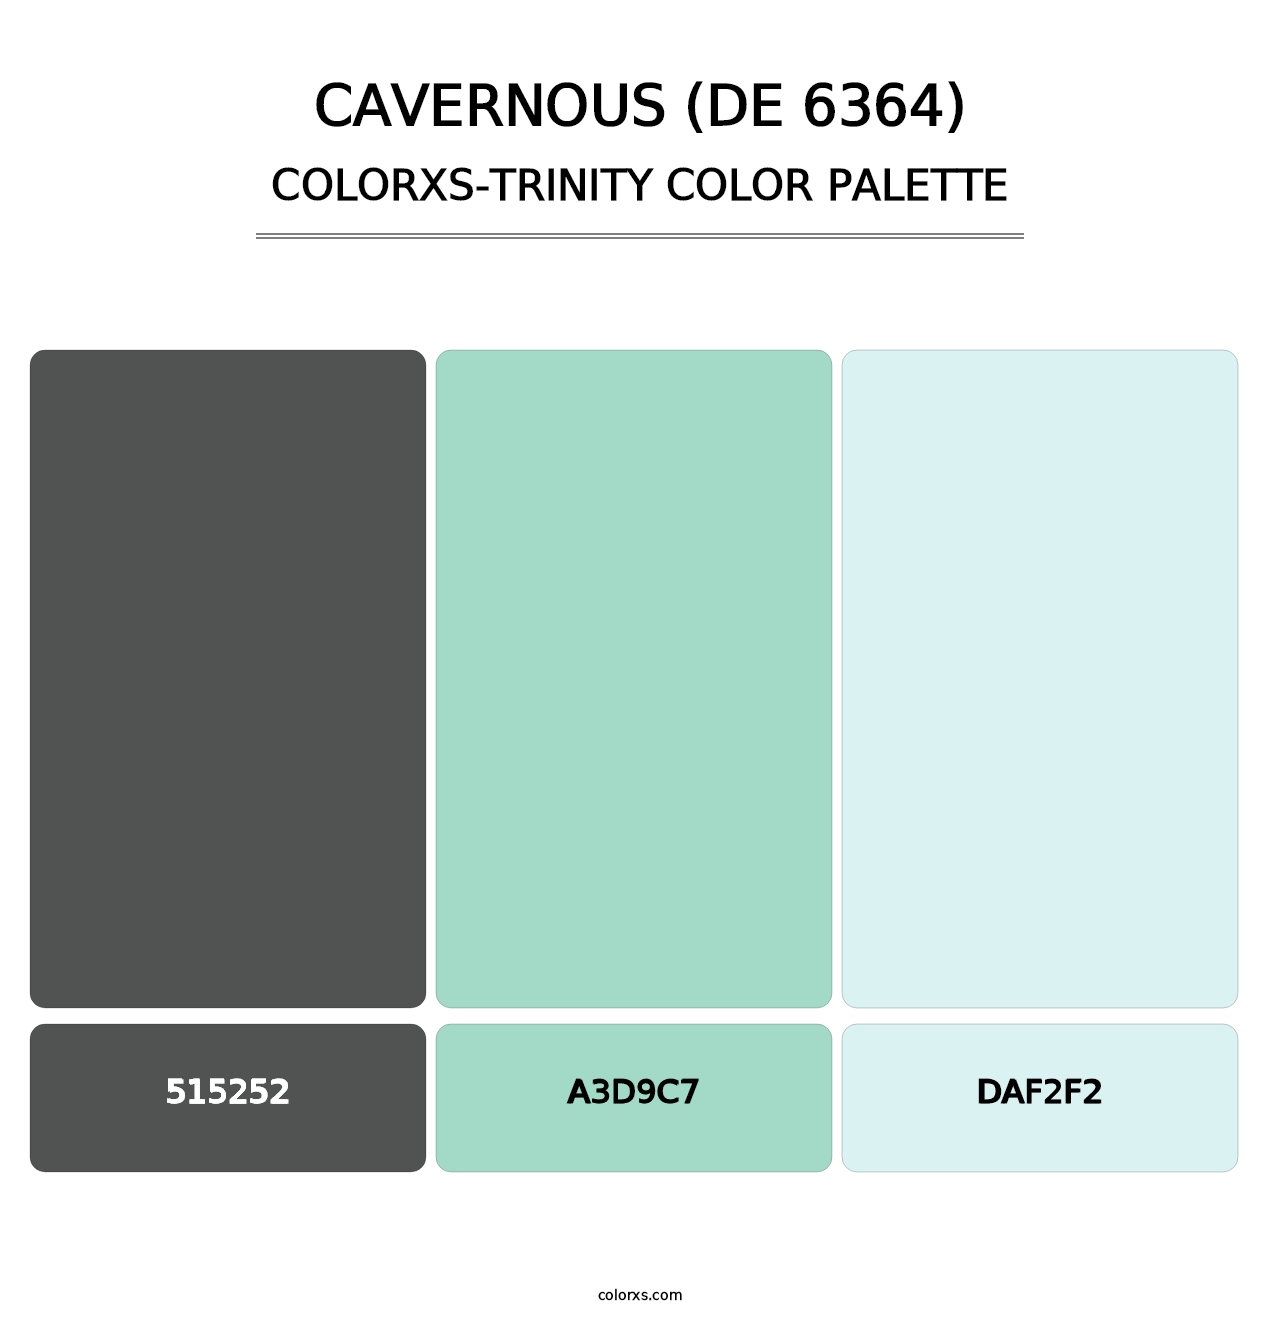 Cavernous (DE 6364) - Colorxs Trinity Palette